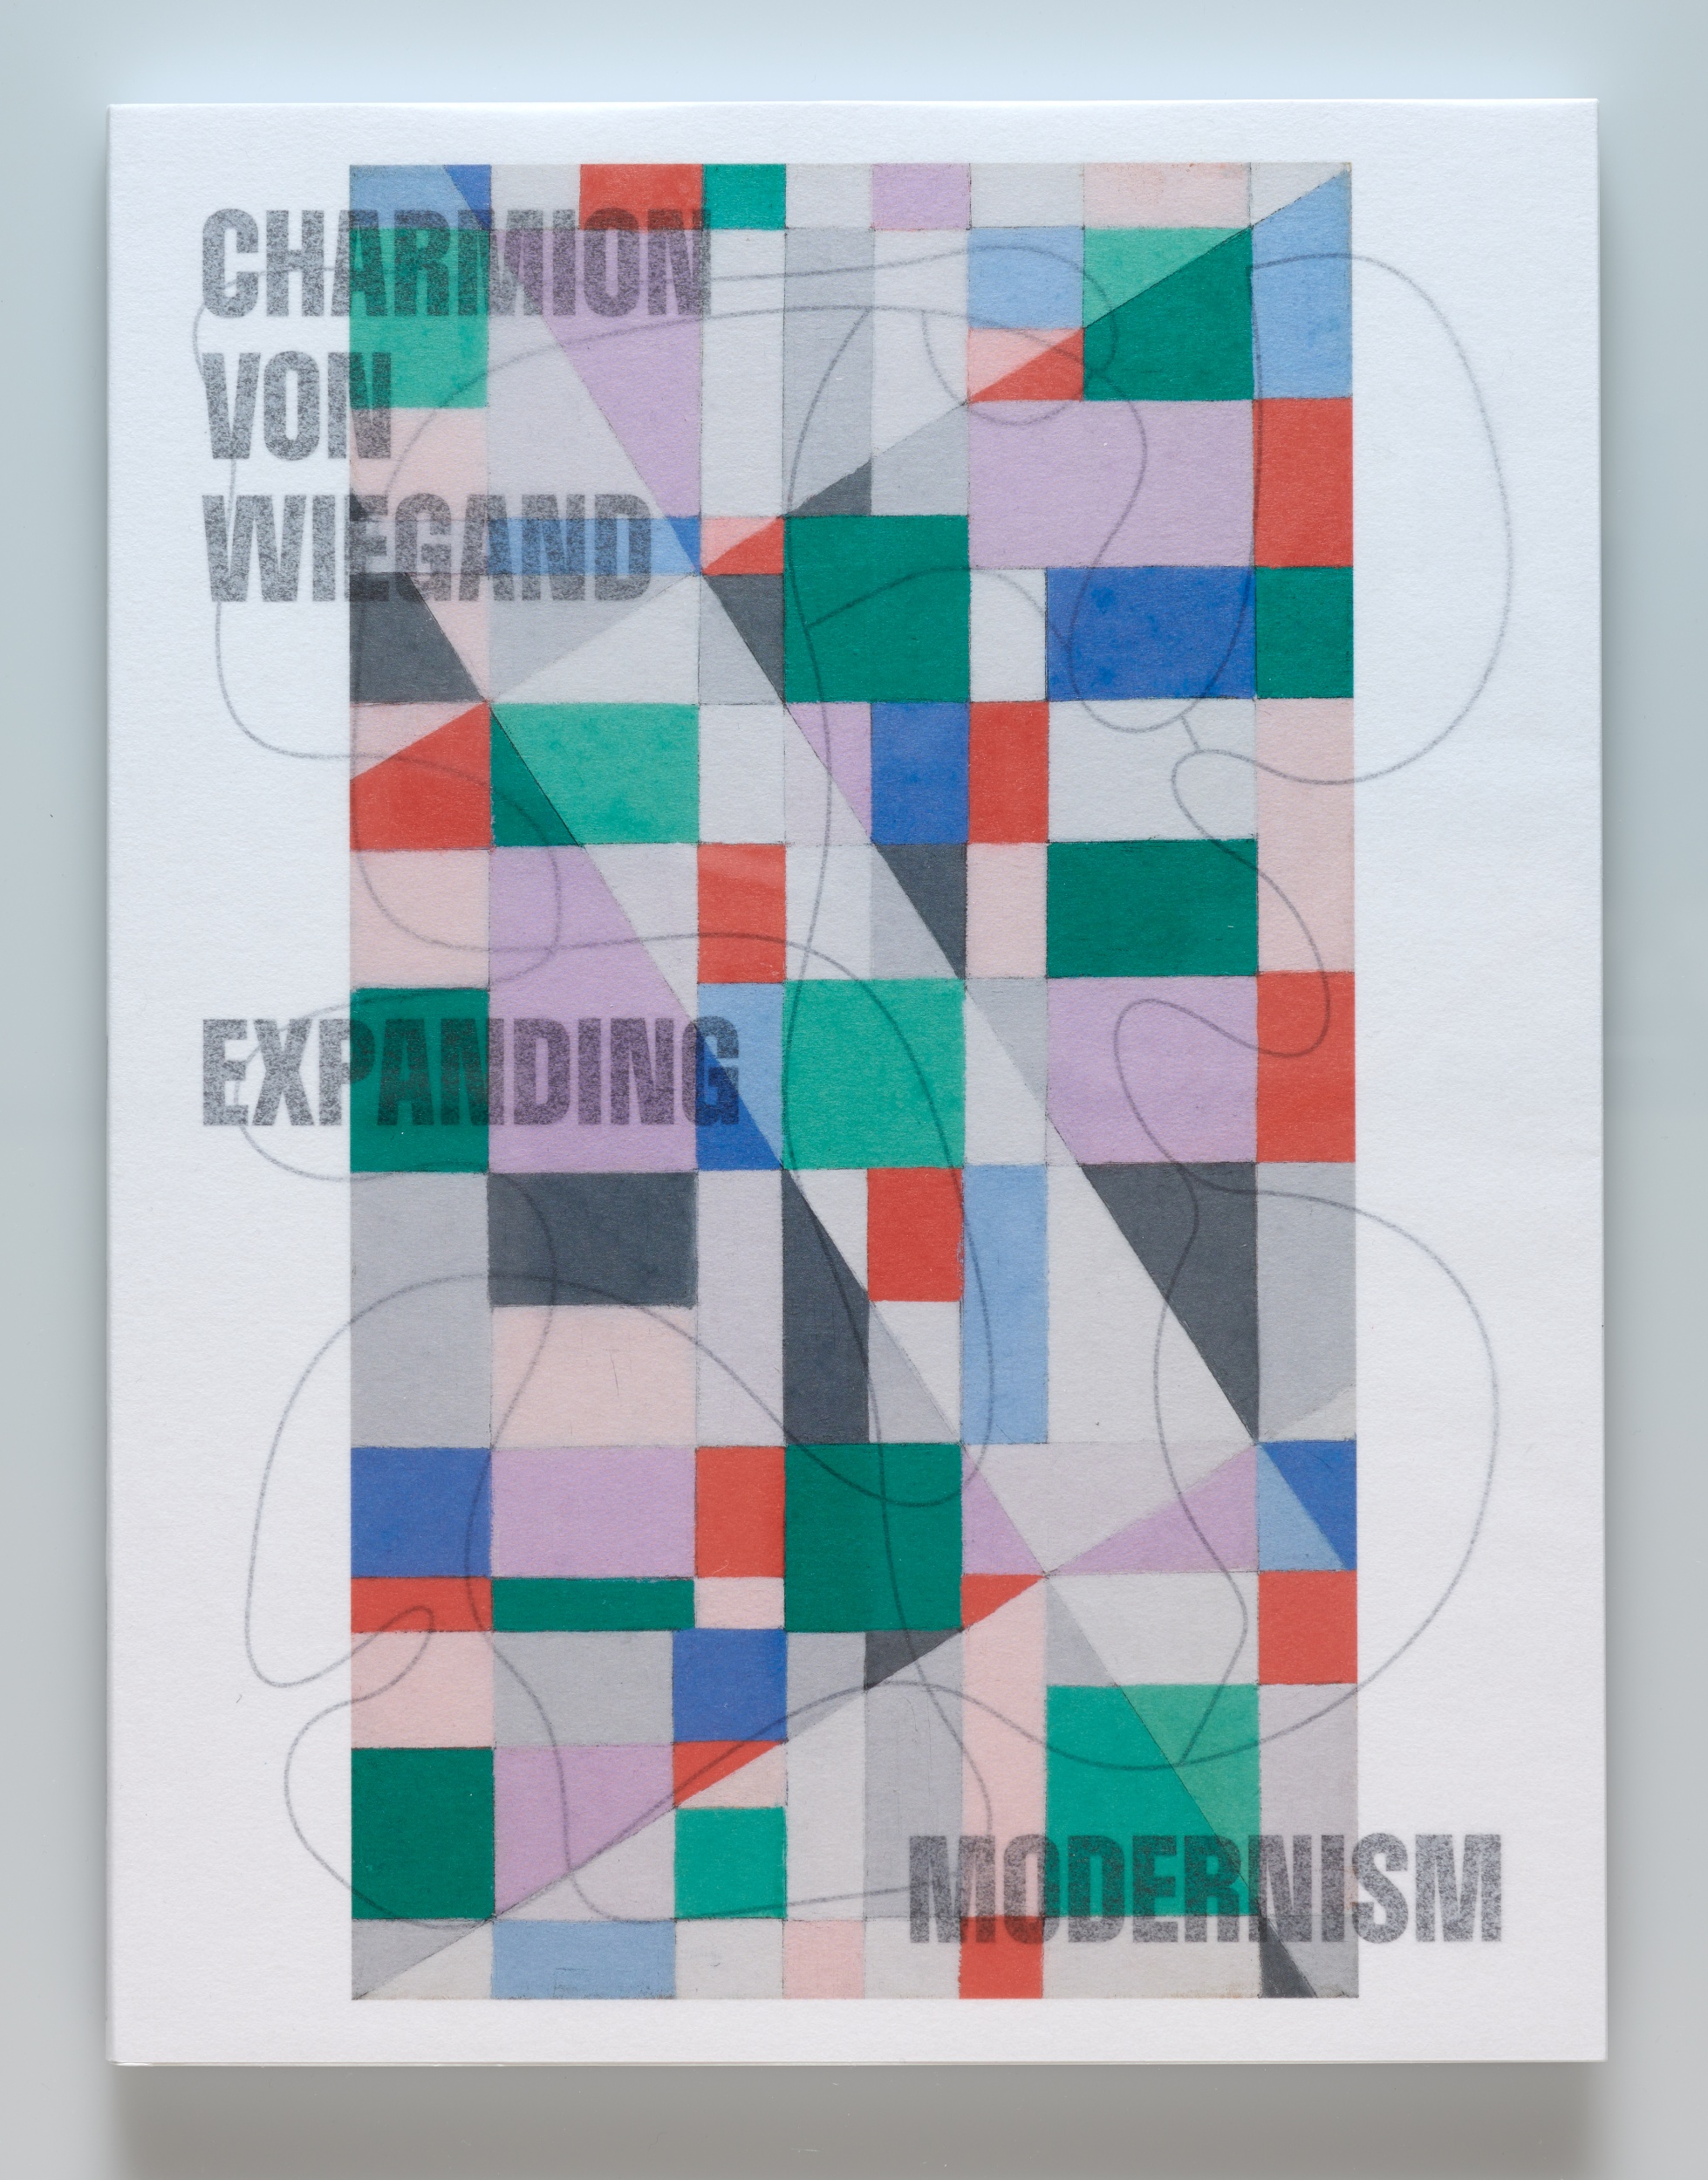 Charmion von Wiegand - Expanding Modernism (Deutsche Ausgabe)